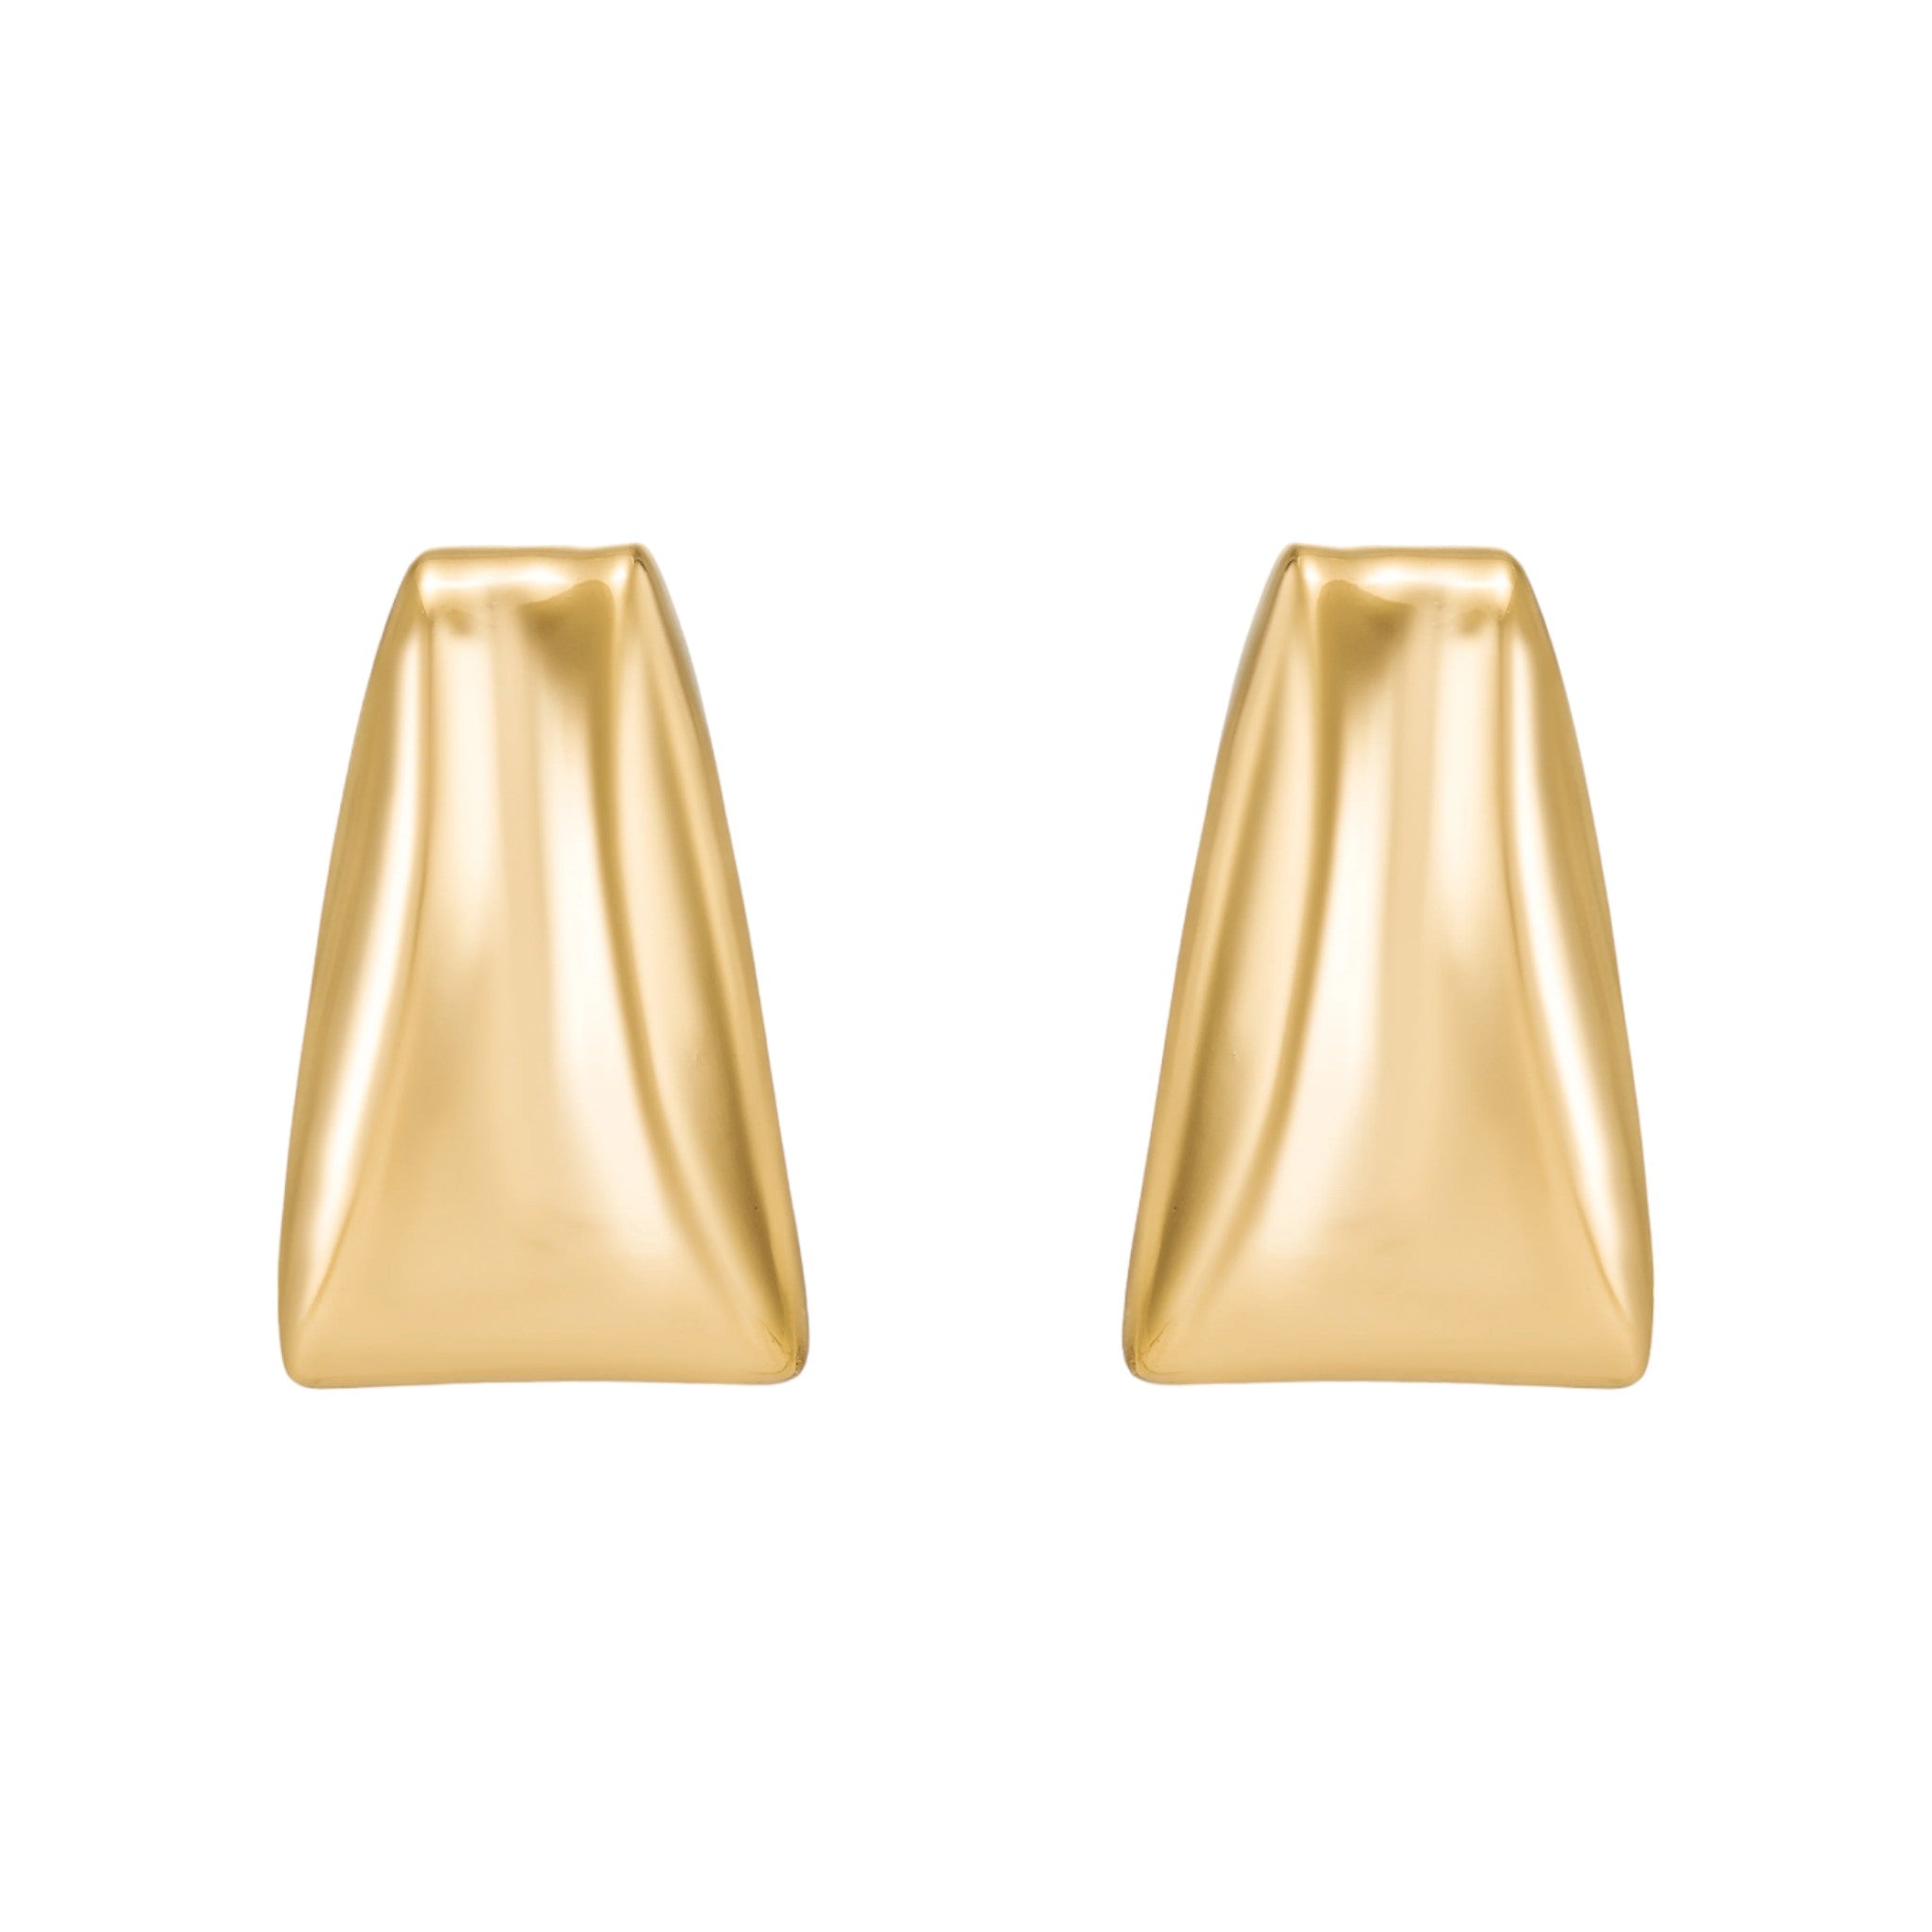 Mod + Jo - Uma Statement Earrings - Gold Plate